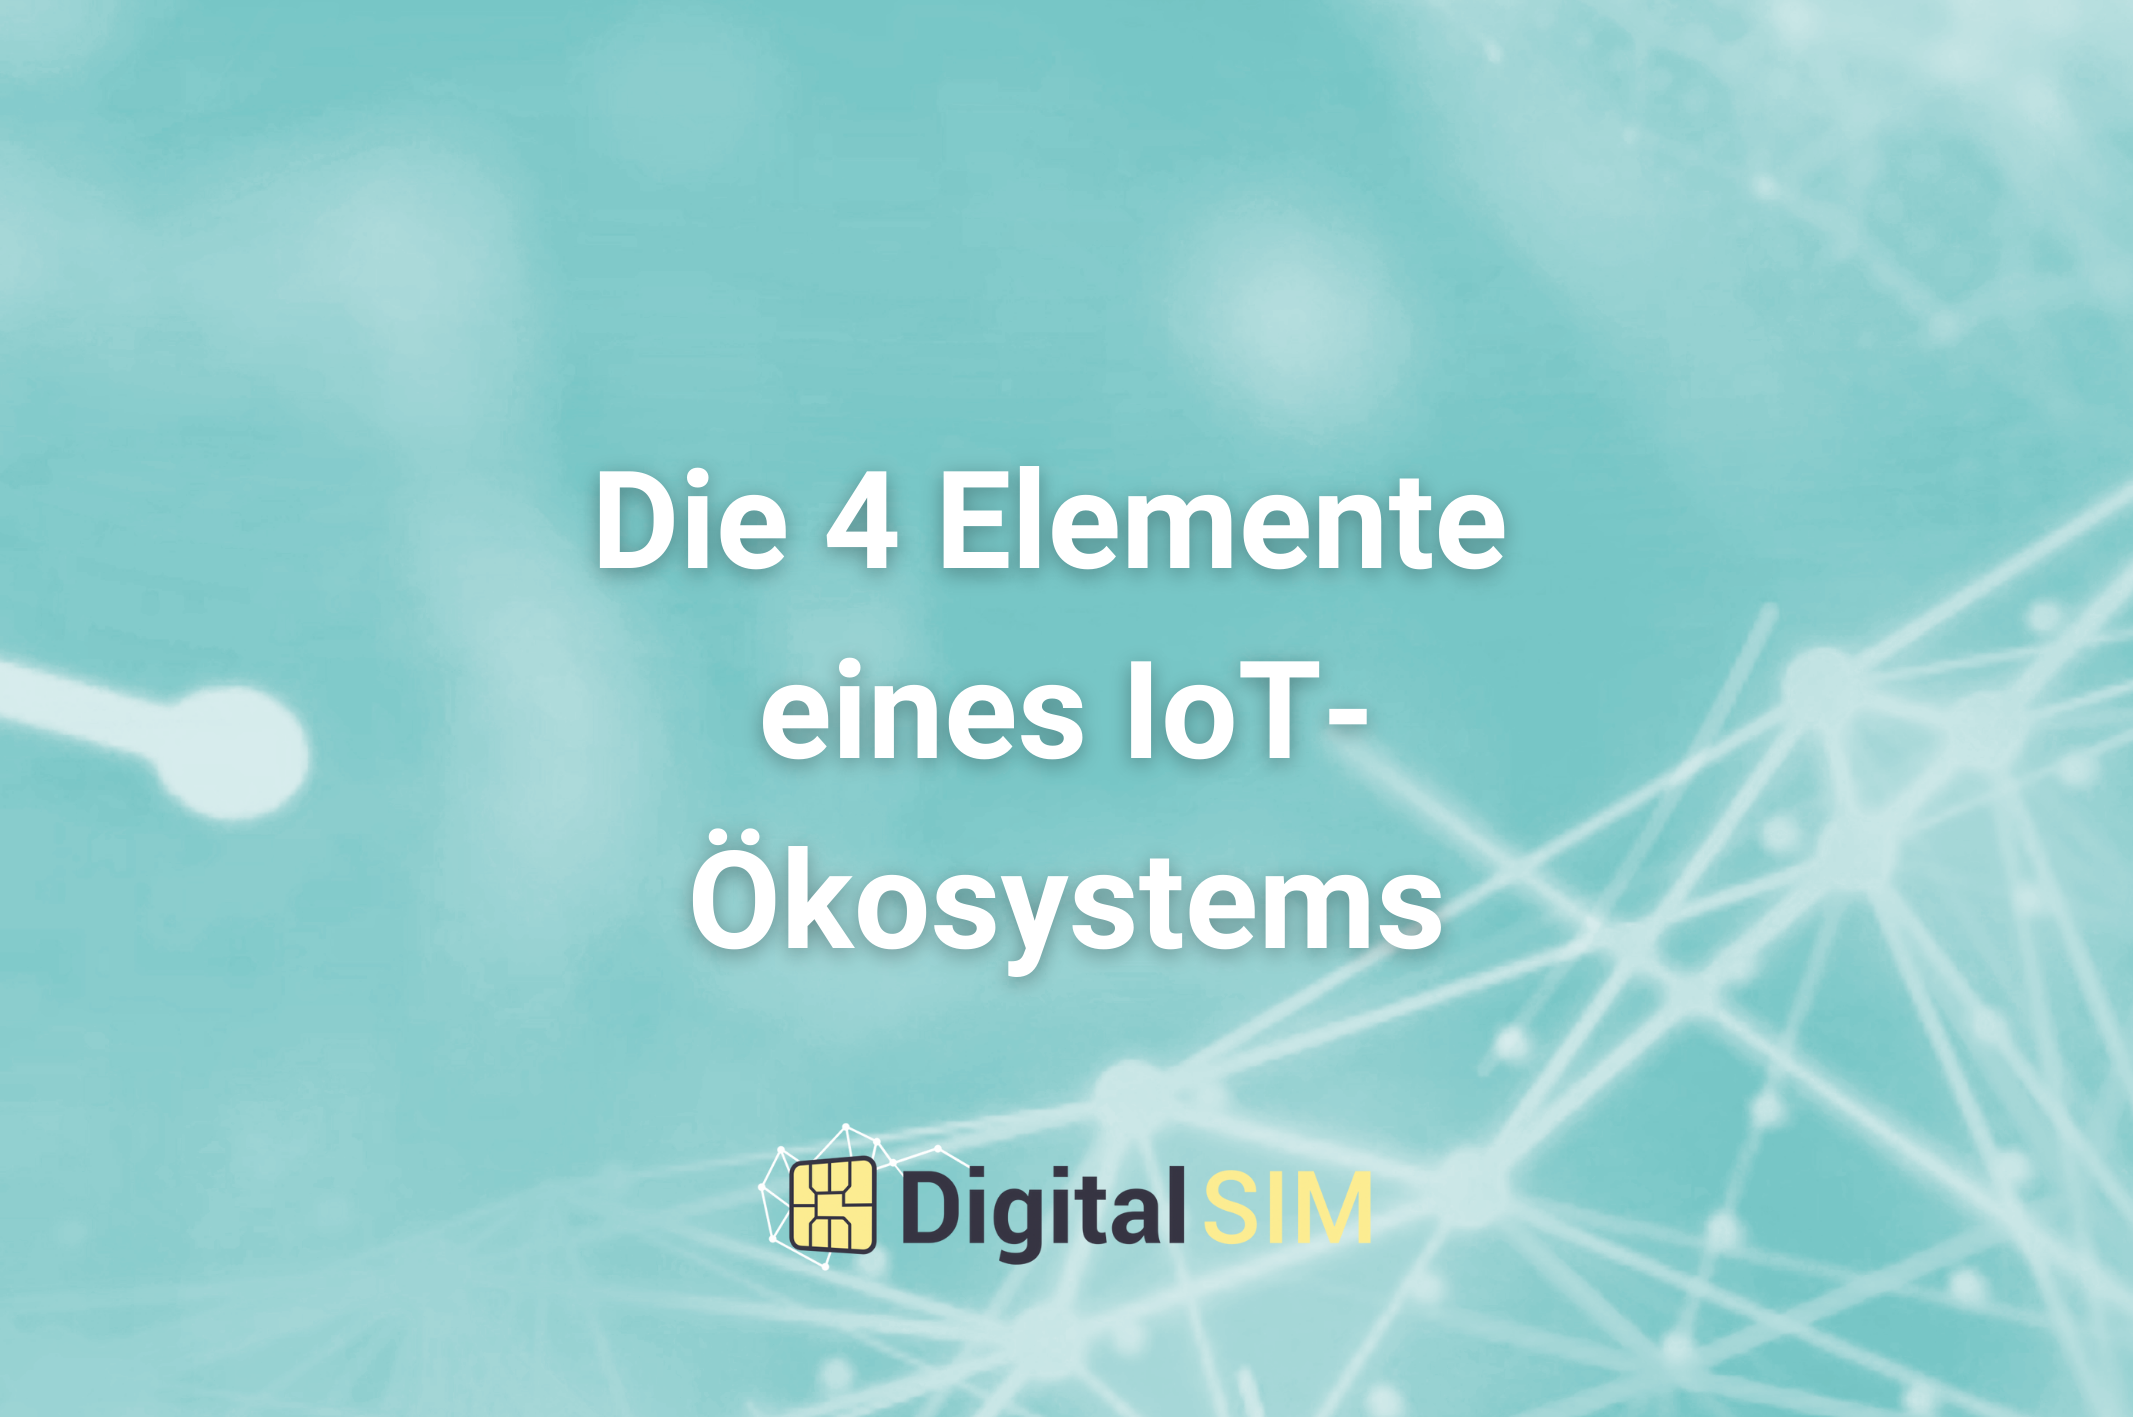 Die 4 Elemente eines IoT-Ökosystems